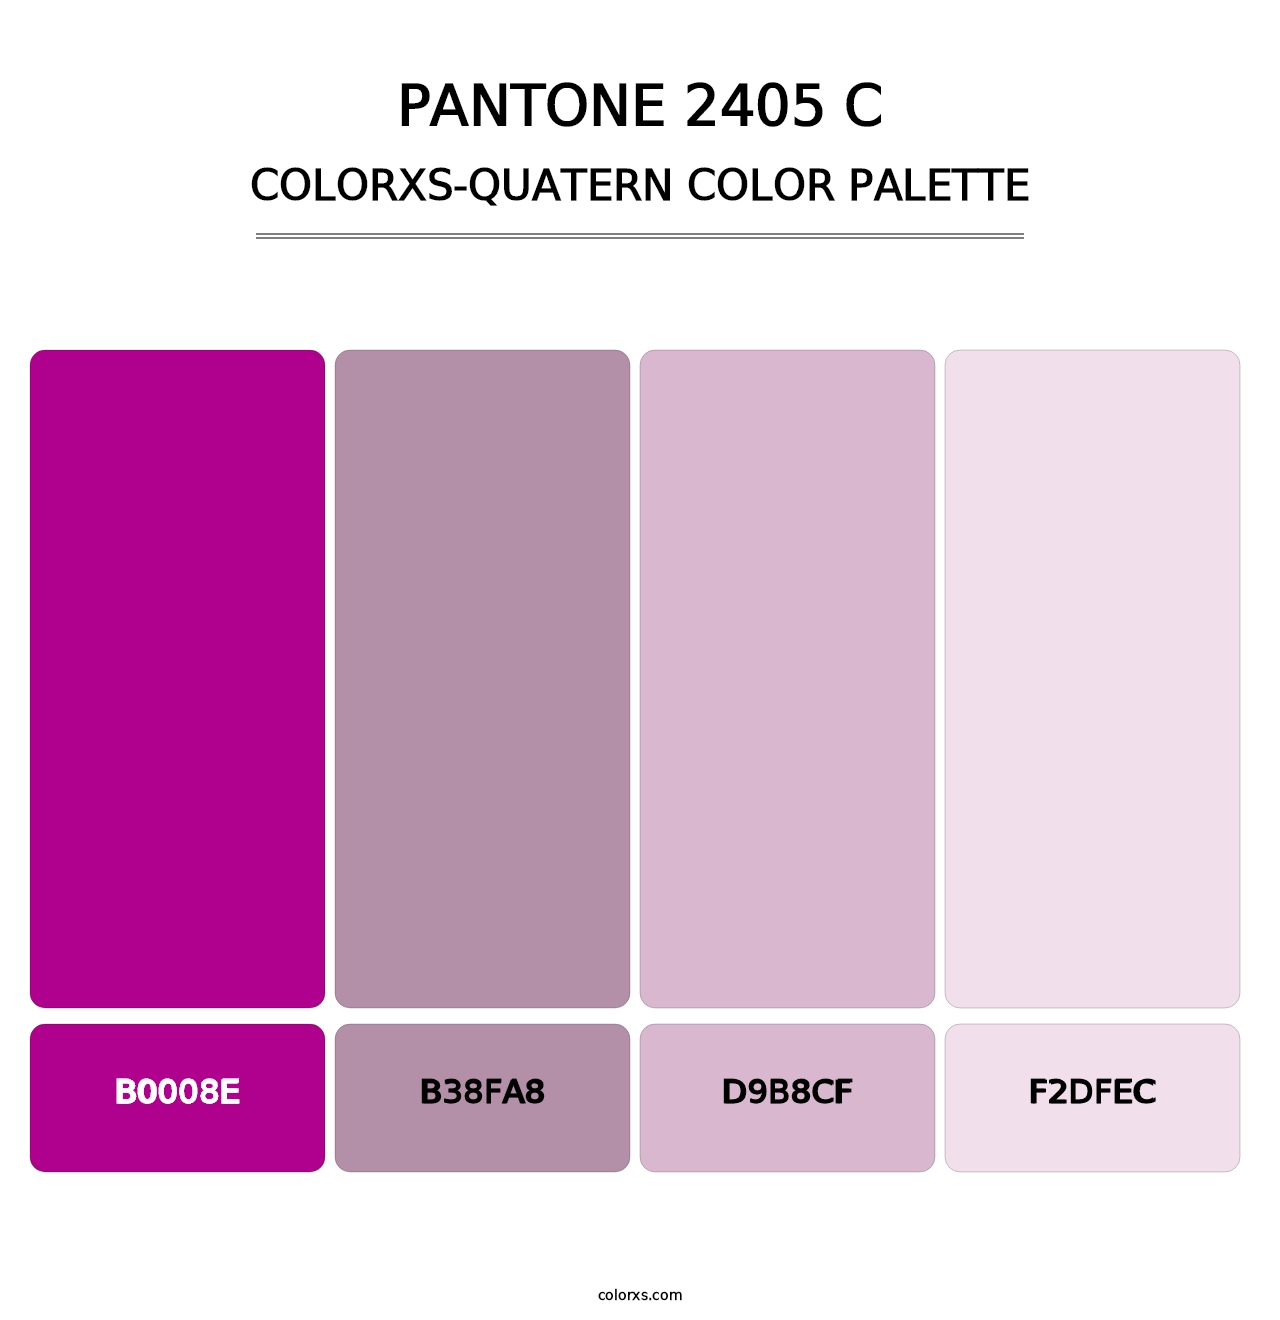 PANTONE 2405 C - Colorxs Quatern Palette